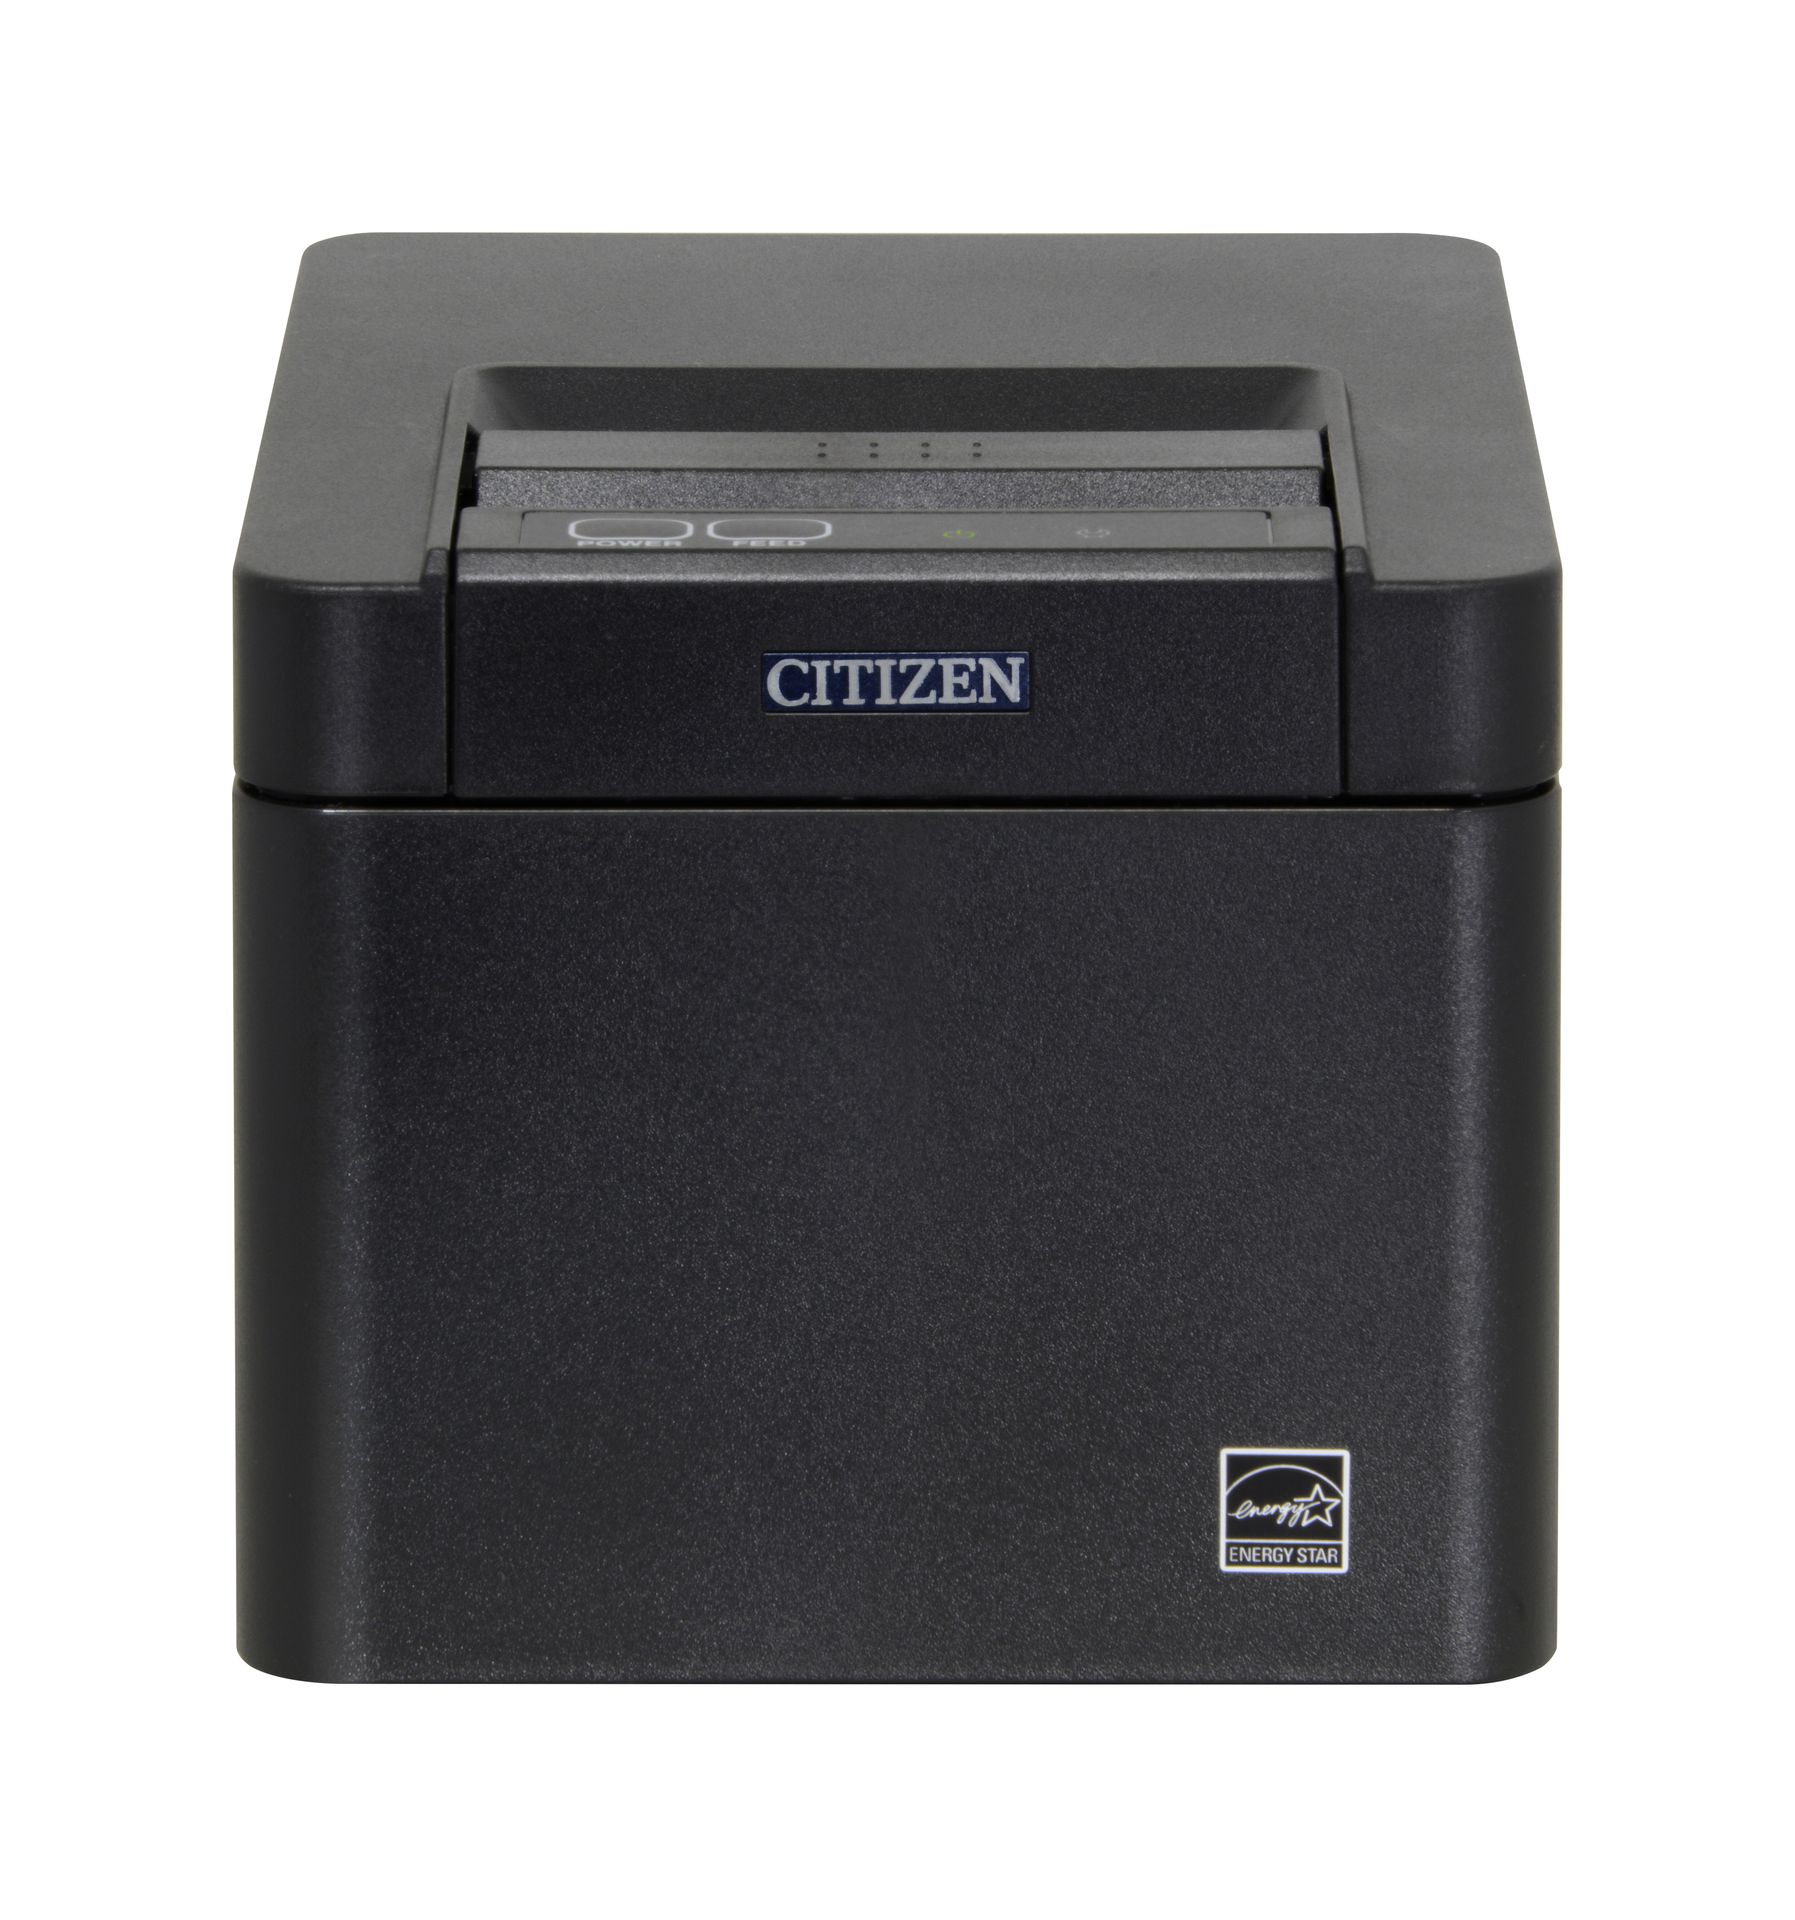 Citizen CT-E301 POS Printer